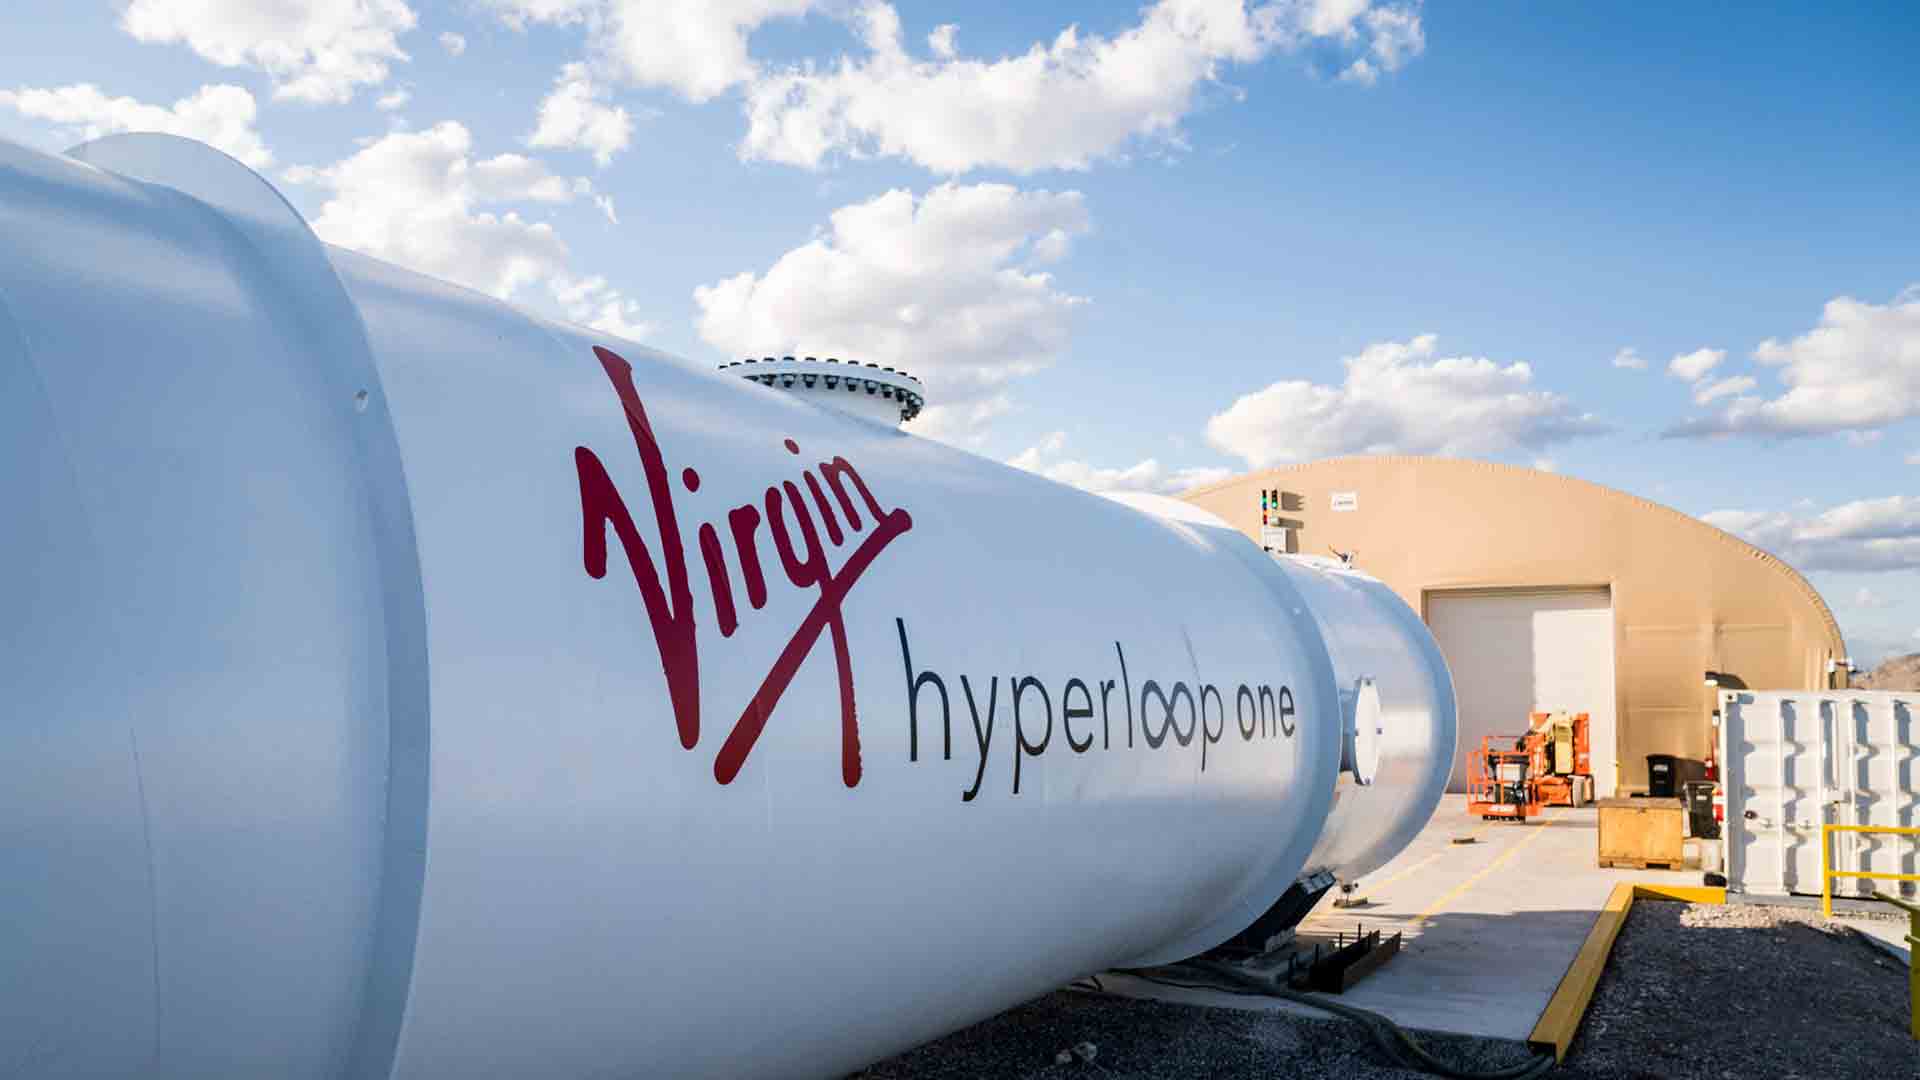 El Hyperloop, el tren más rápido del mundo, llegará a Málaga